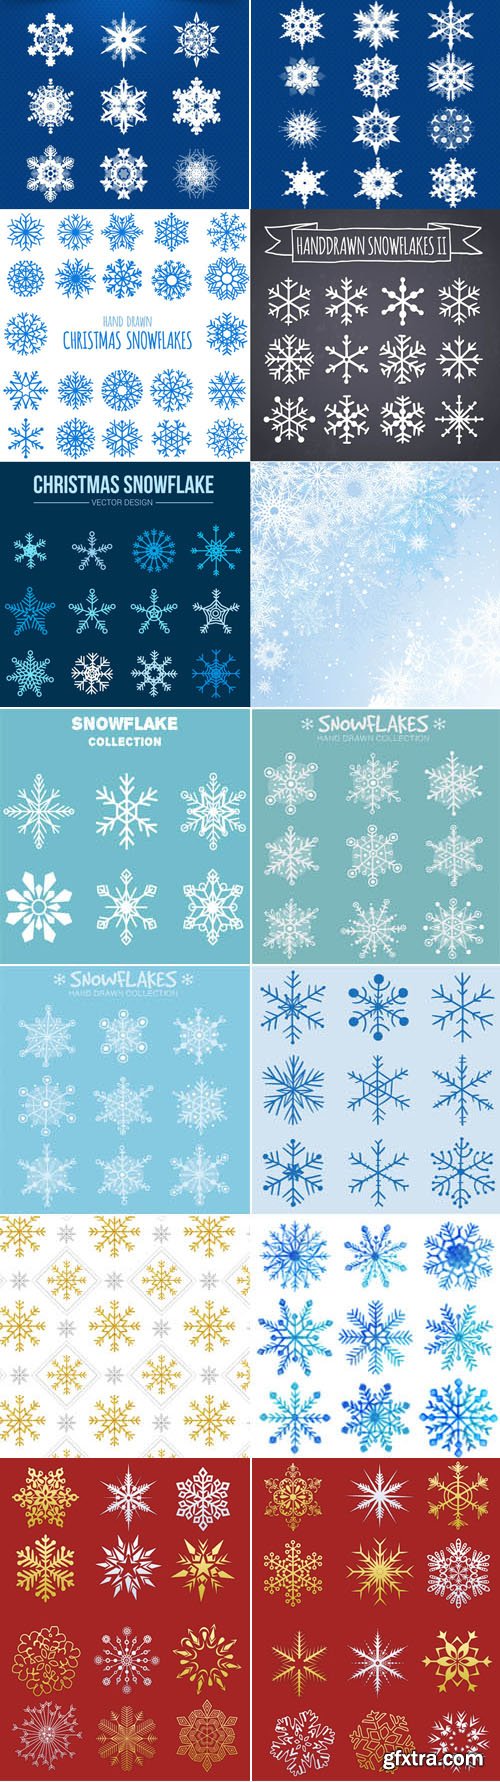 Vector Snowflakes Elements Bundle 2